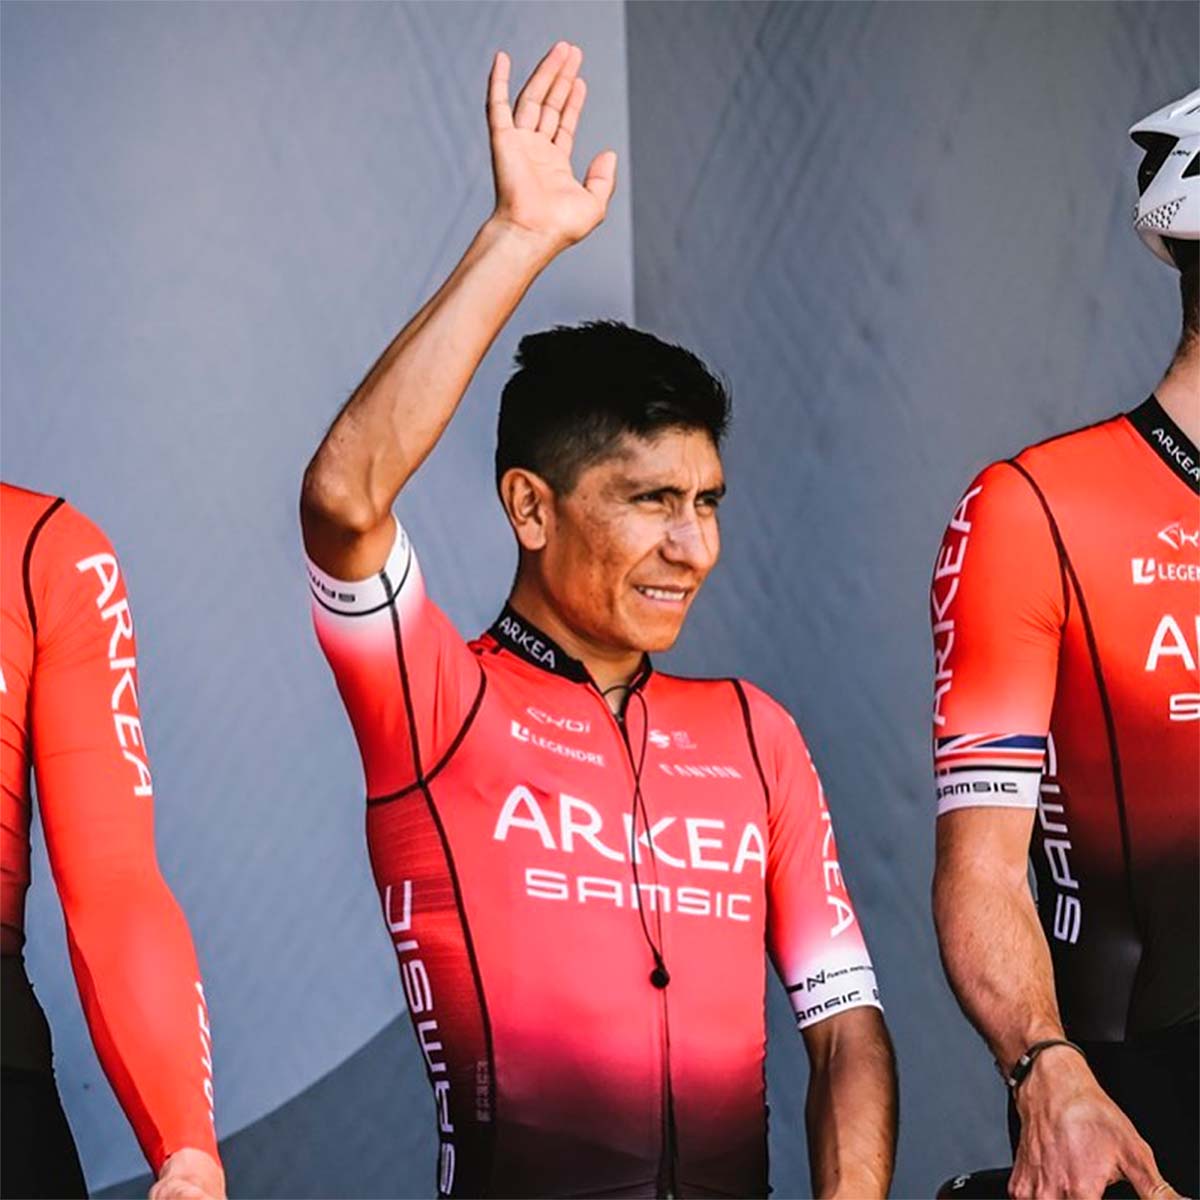 Nairo Quintana renuncia a La Vuelta a España: "Volveré al calendario de carreras al final de la temporada"